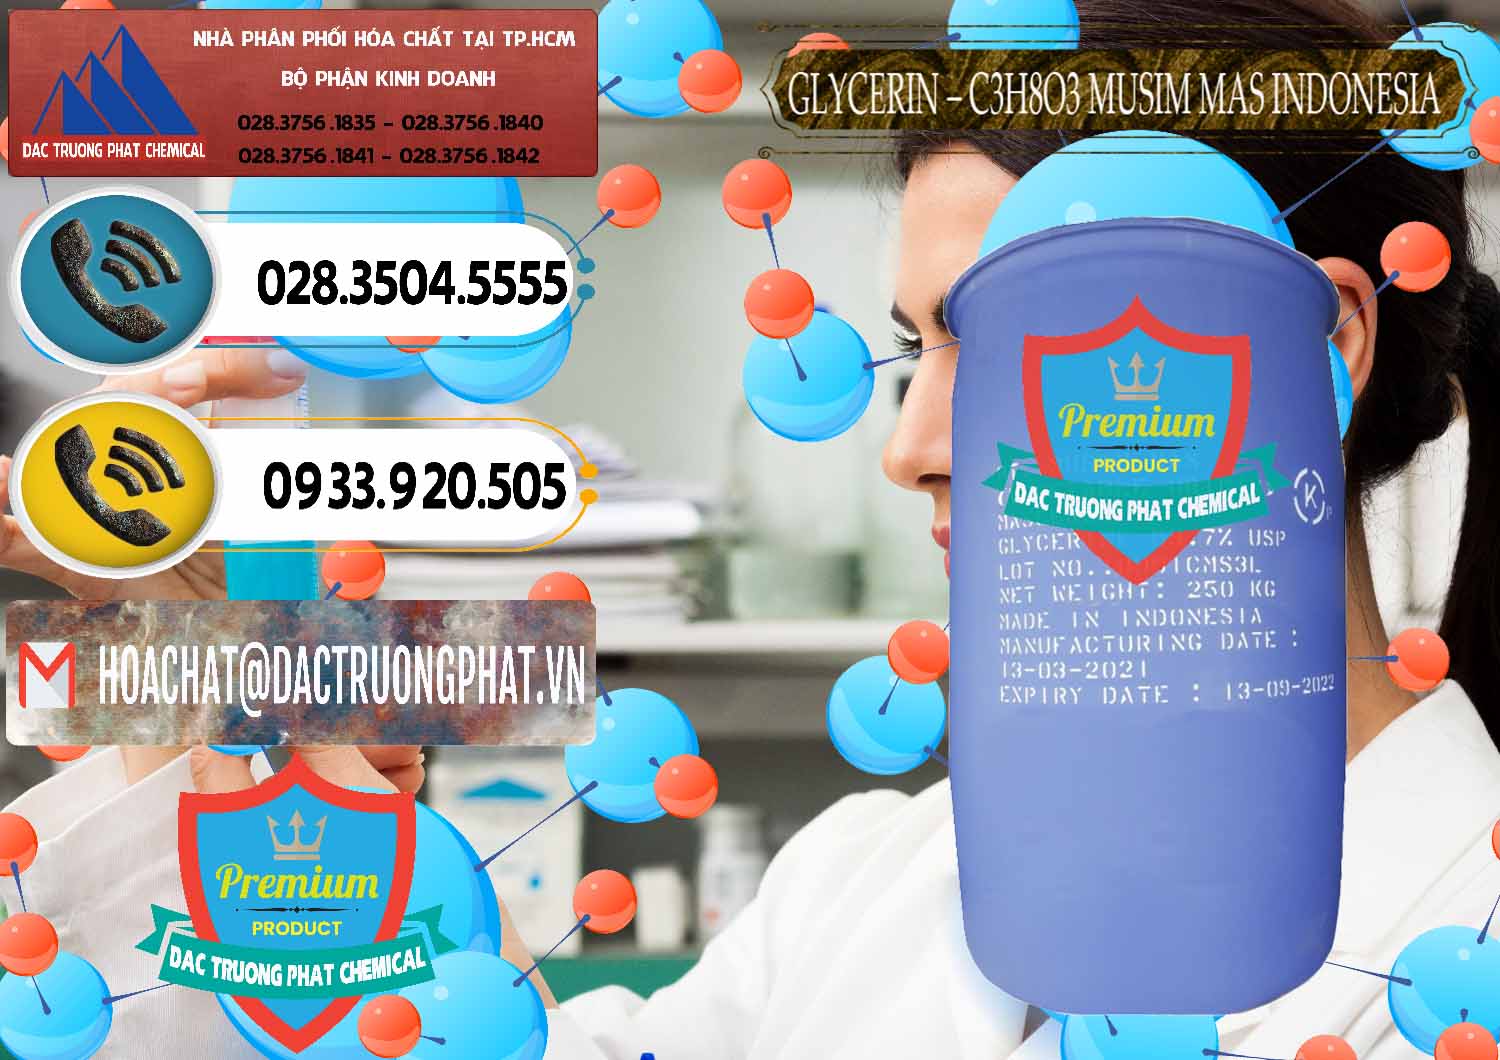 Chuyên bán - cung ứng Glycerin – C3H8O3 99.7% Musim Mas Indonesia - 0272 - Cung cấp - phân phối hóa chất tại TP.HCM - hoachatdetnhuom.vn